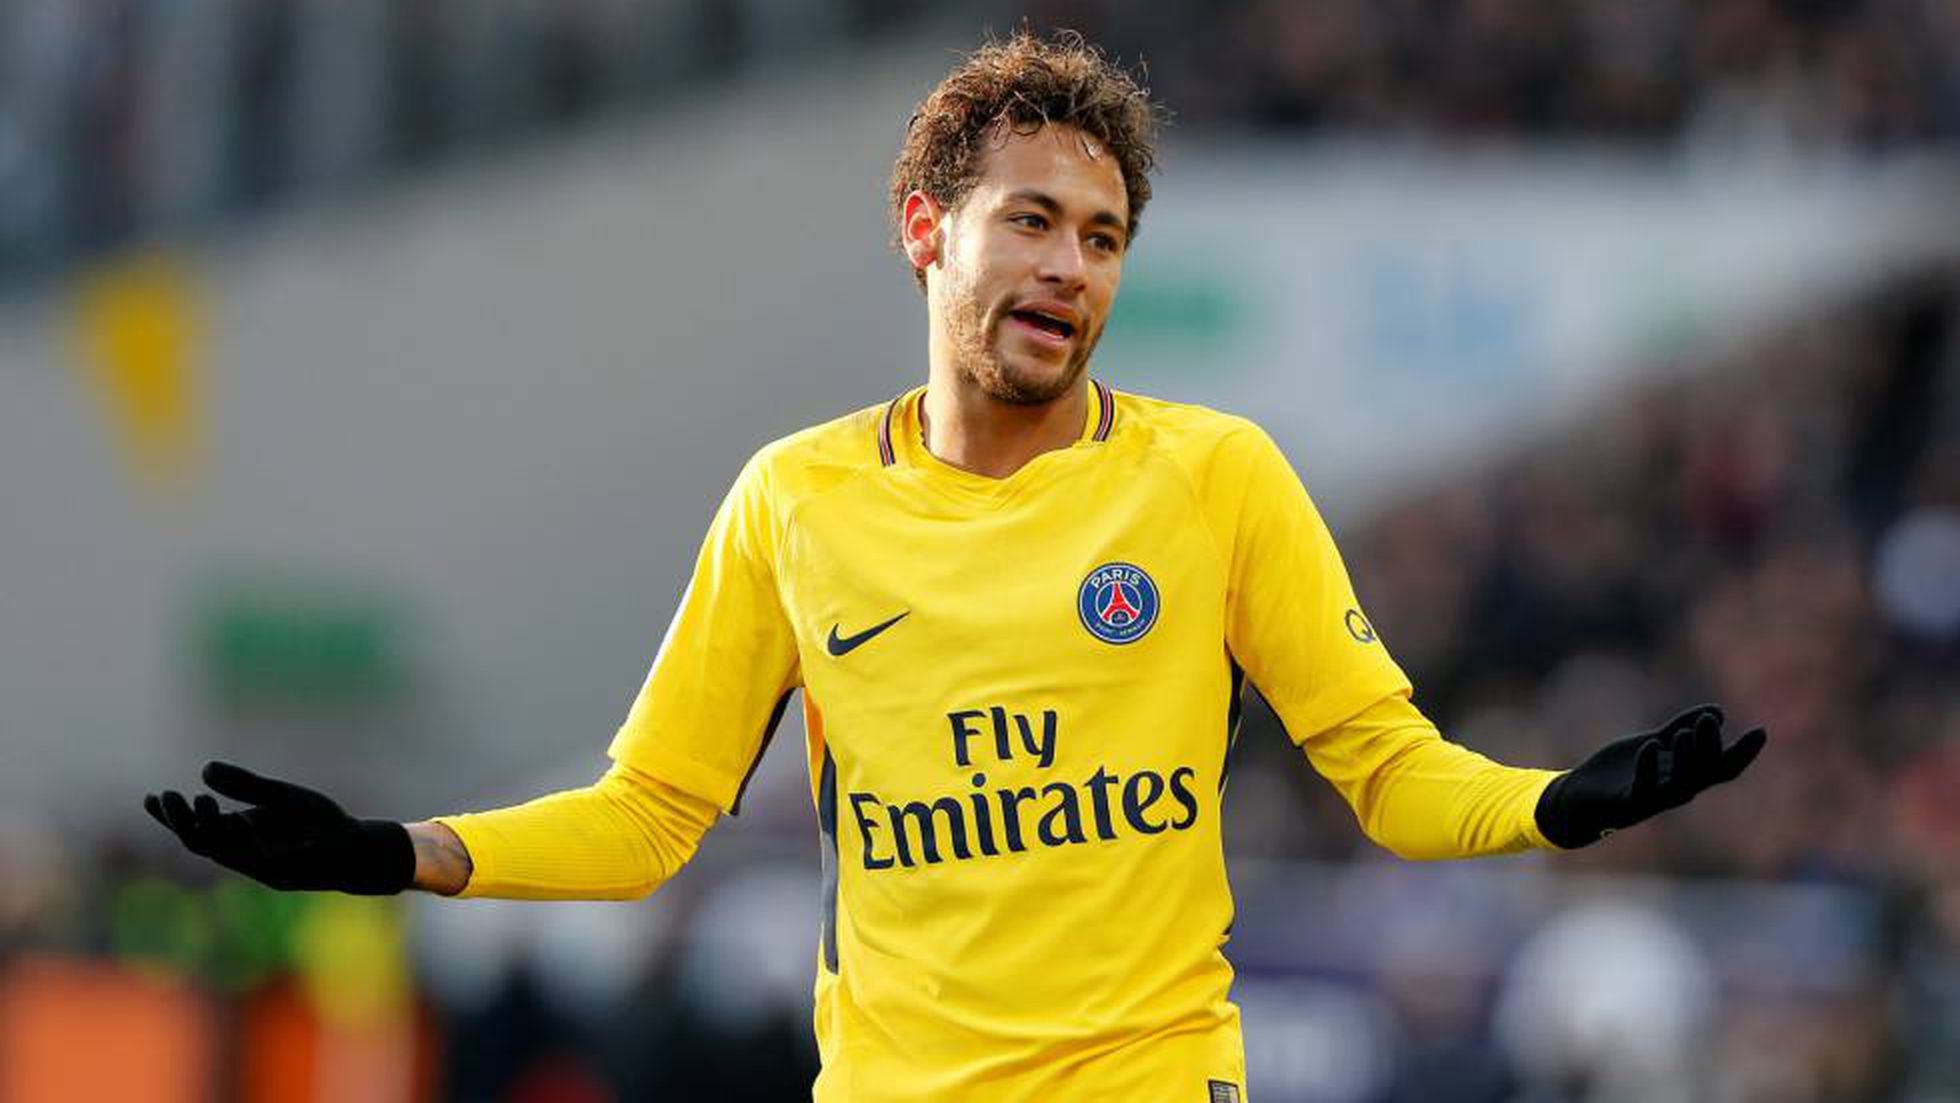 Neymar lança cores quentes das grifes no frio outono de Paris